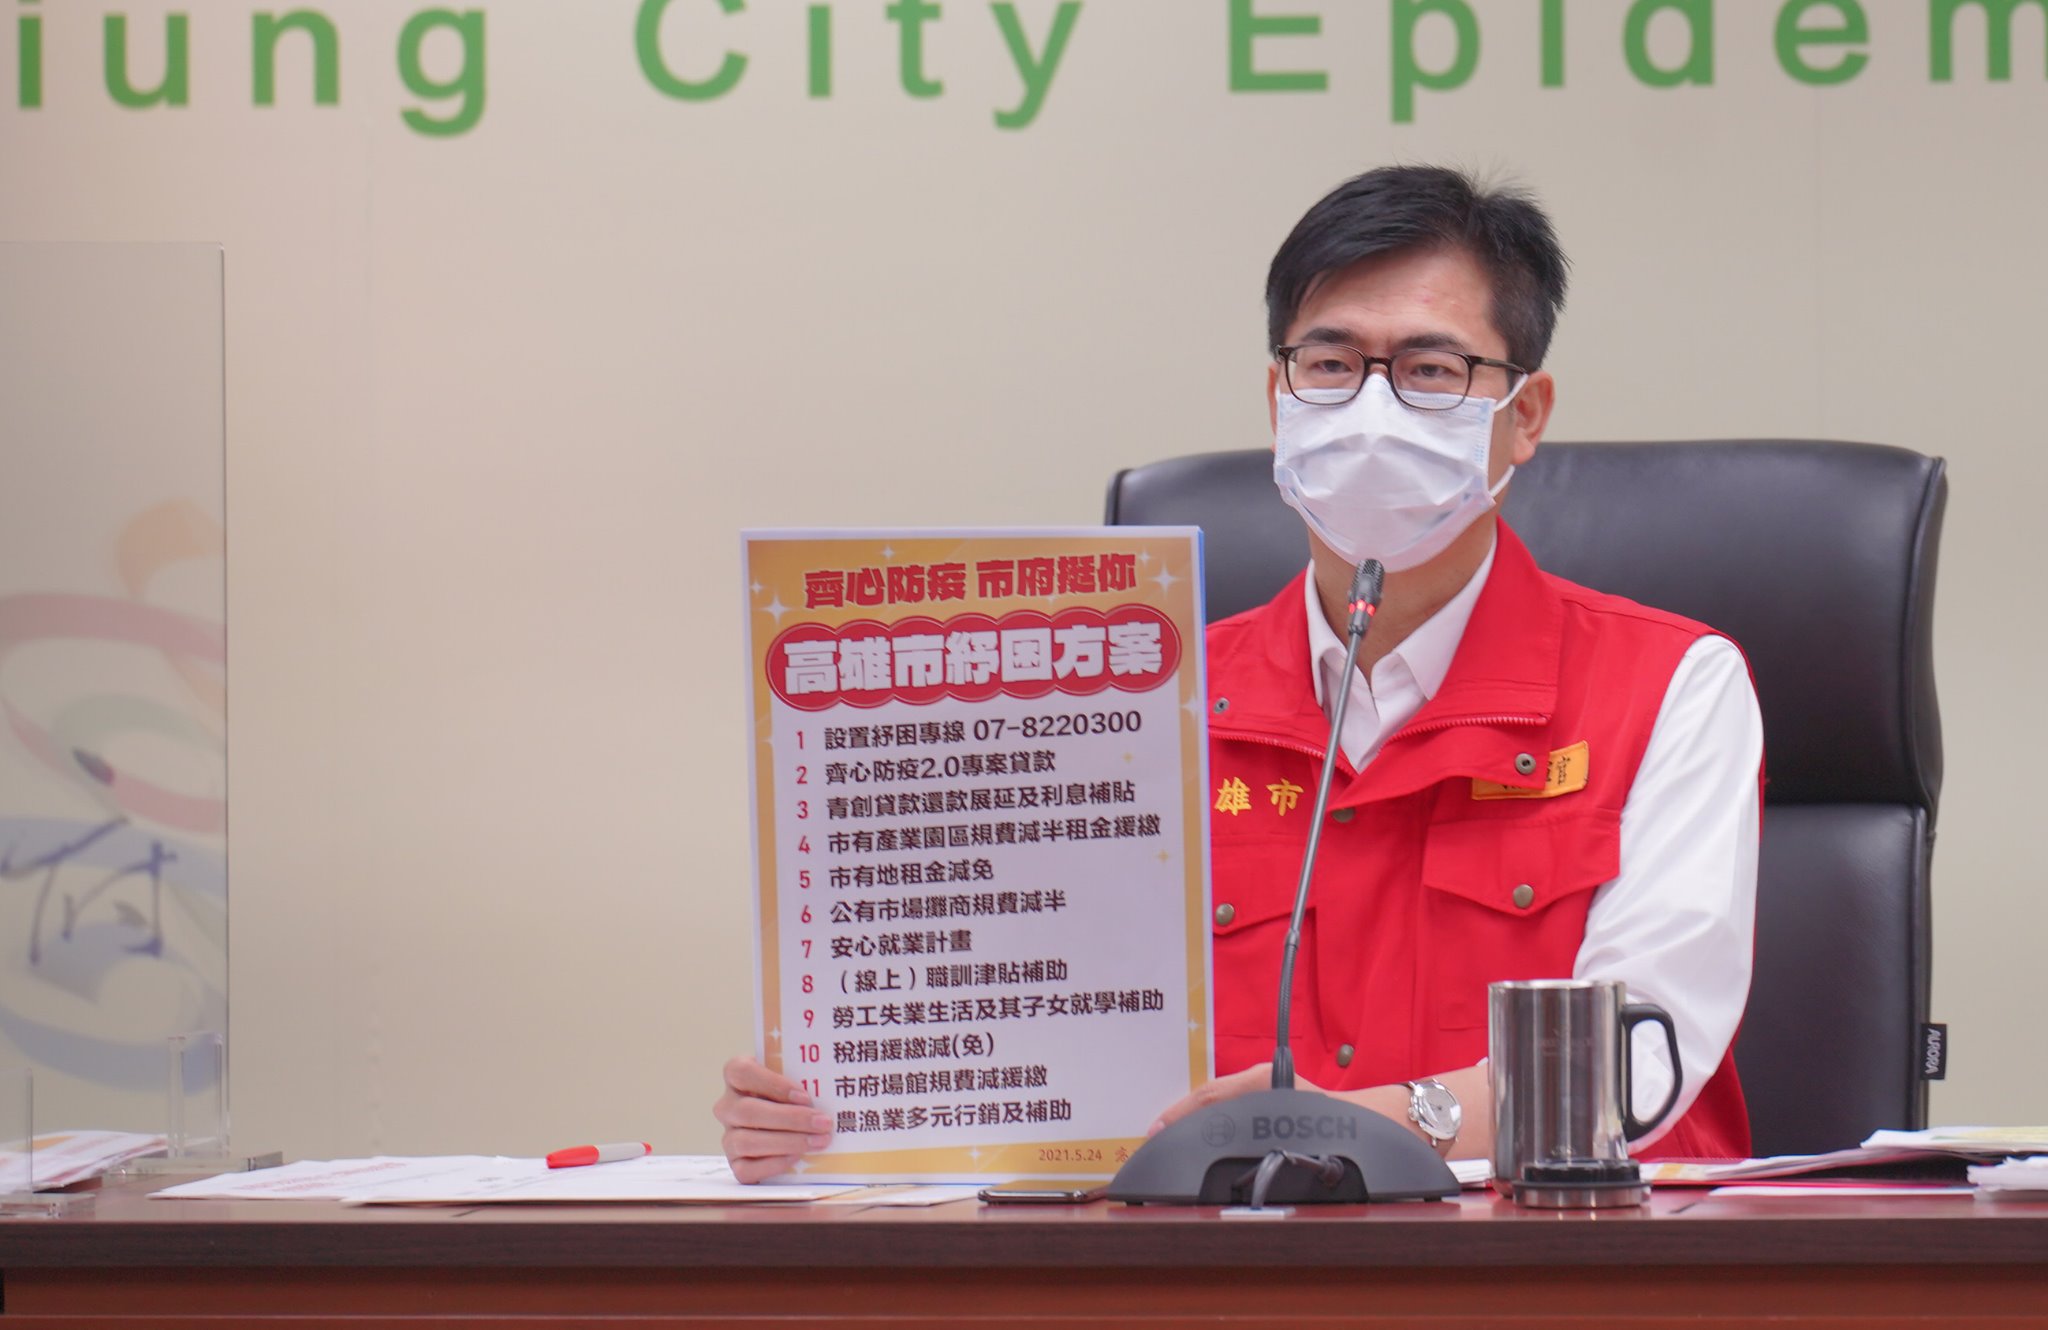 Chính quyền thành phố Cao Hùng đã đưa ra 12 chương trình cứu trợ hy vọng có thể cùng với người dân vượt qua khó khăn trong mùa dịch. (Nguồn ảnh: trích dẫn từ Facebook thị trưởng thành phố Cao Hùng Trần Kỳ Mại)